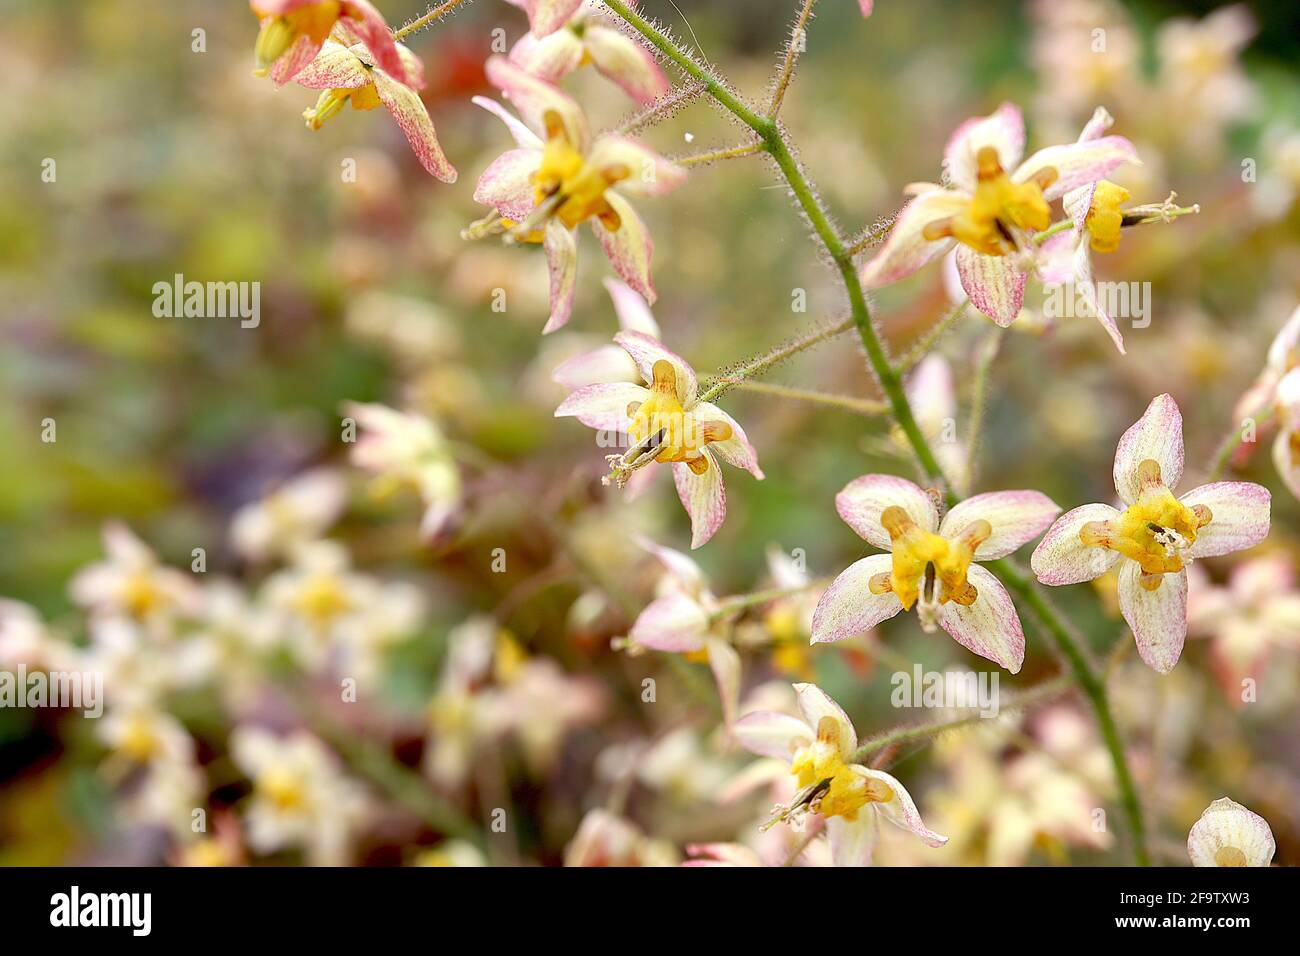 Epimedium wushanense x flavum barrenmoût jaunâtre – fleurs pendantes rouges marbrées avec des couleurs jaunes crochetées, avril, Angleterre, Royaume-Uni Banque D'Images